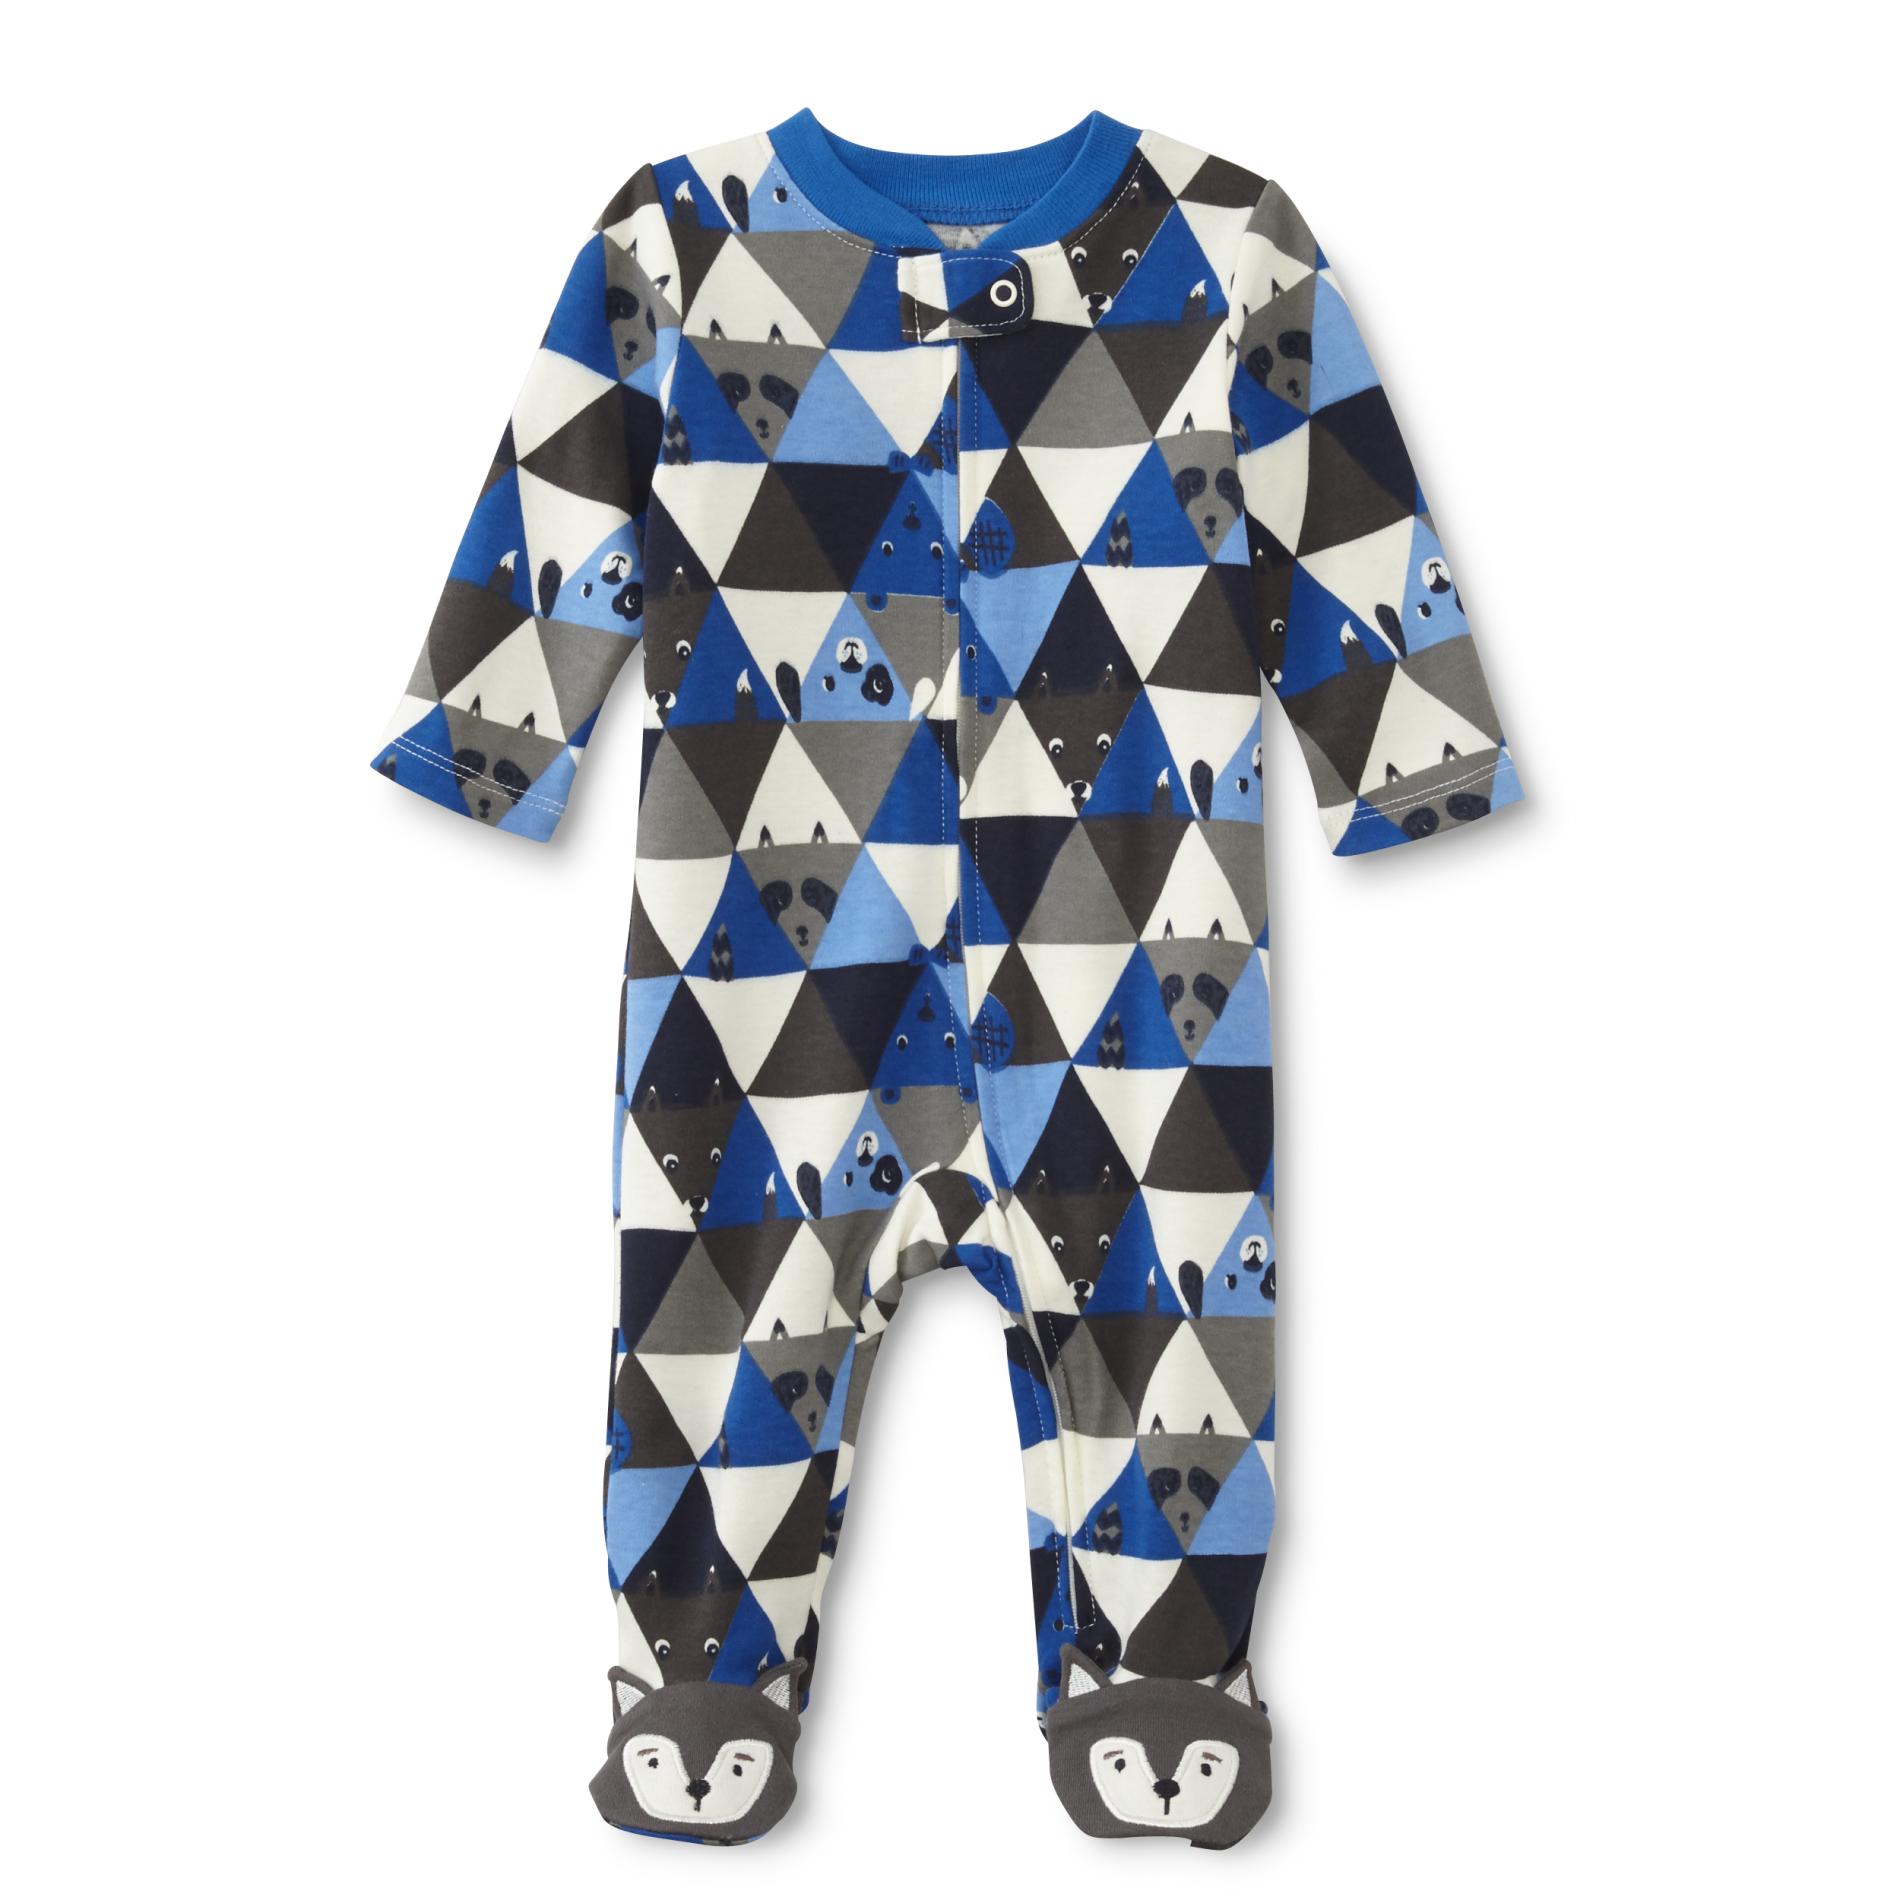 Small Wonders Newborn Boy's Footed Pajamas - Geometric